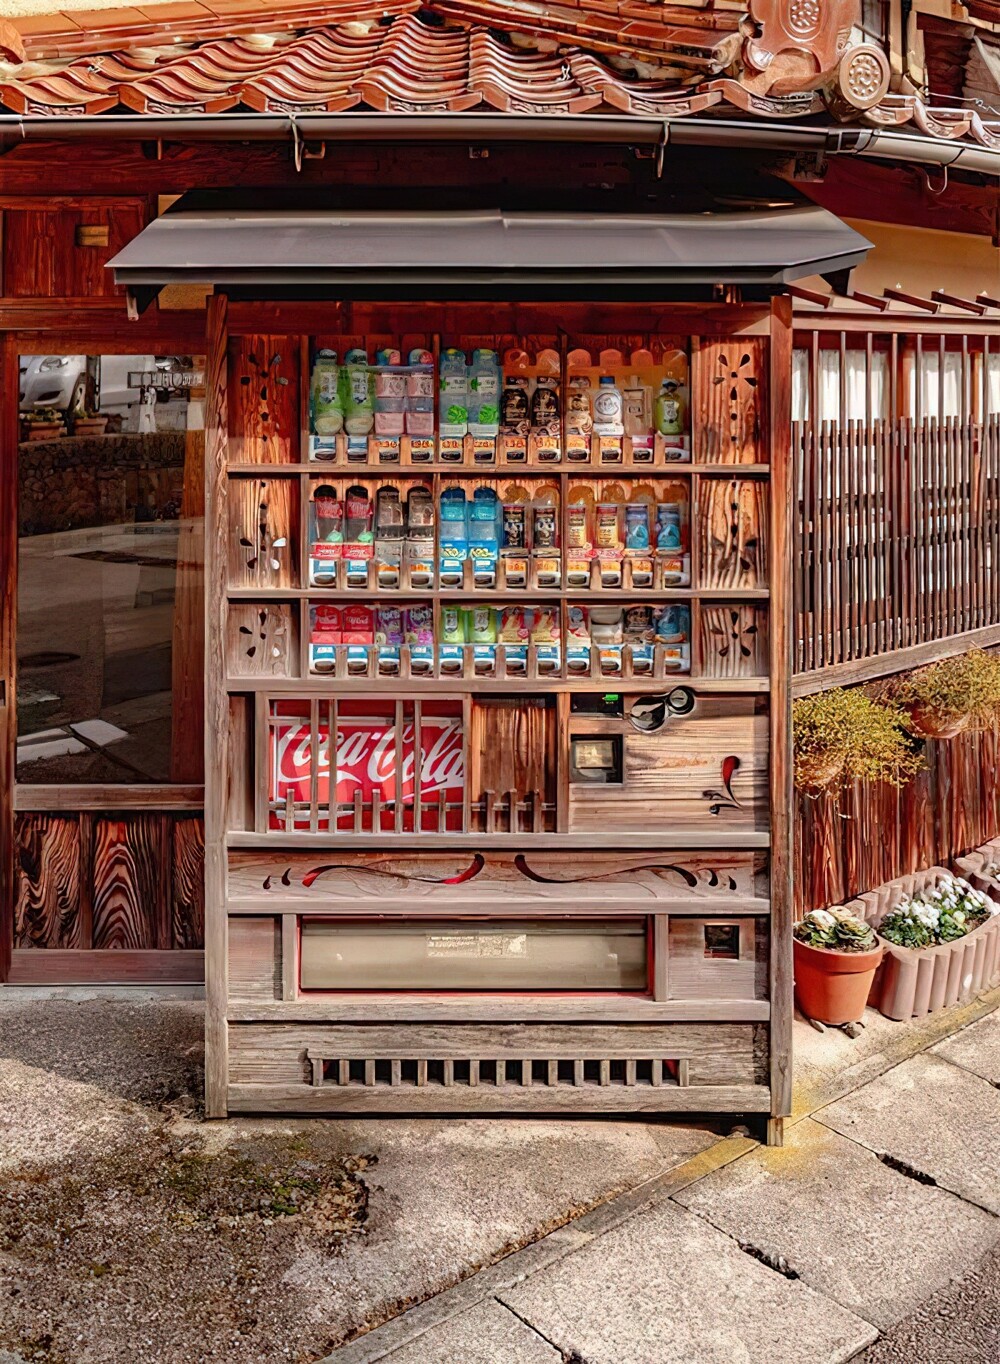 15. Торговые автоматы в исторических местах оформляют так, чтобы они вписывались в архитектурный ансамбль